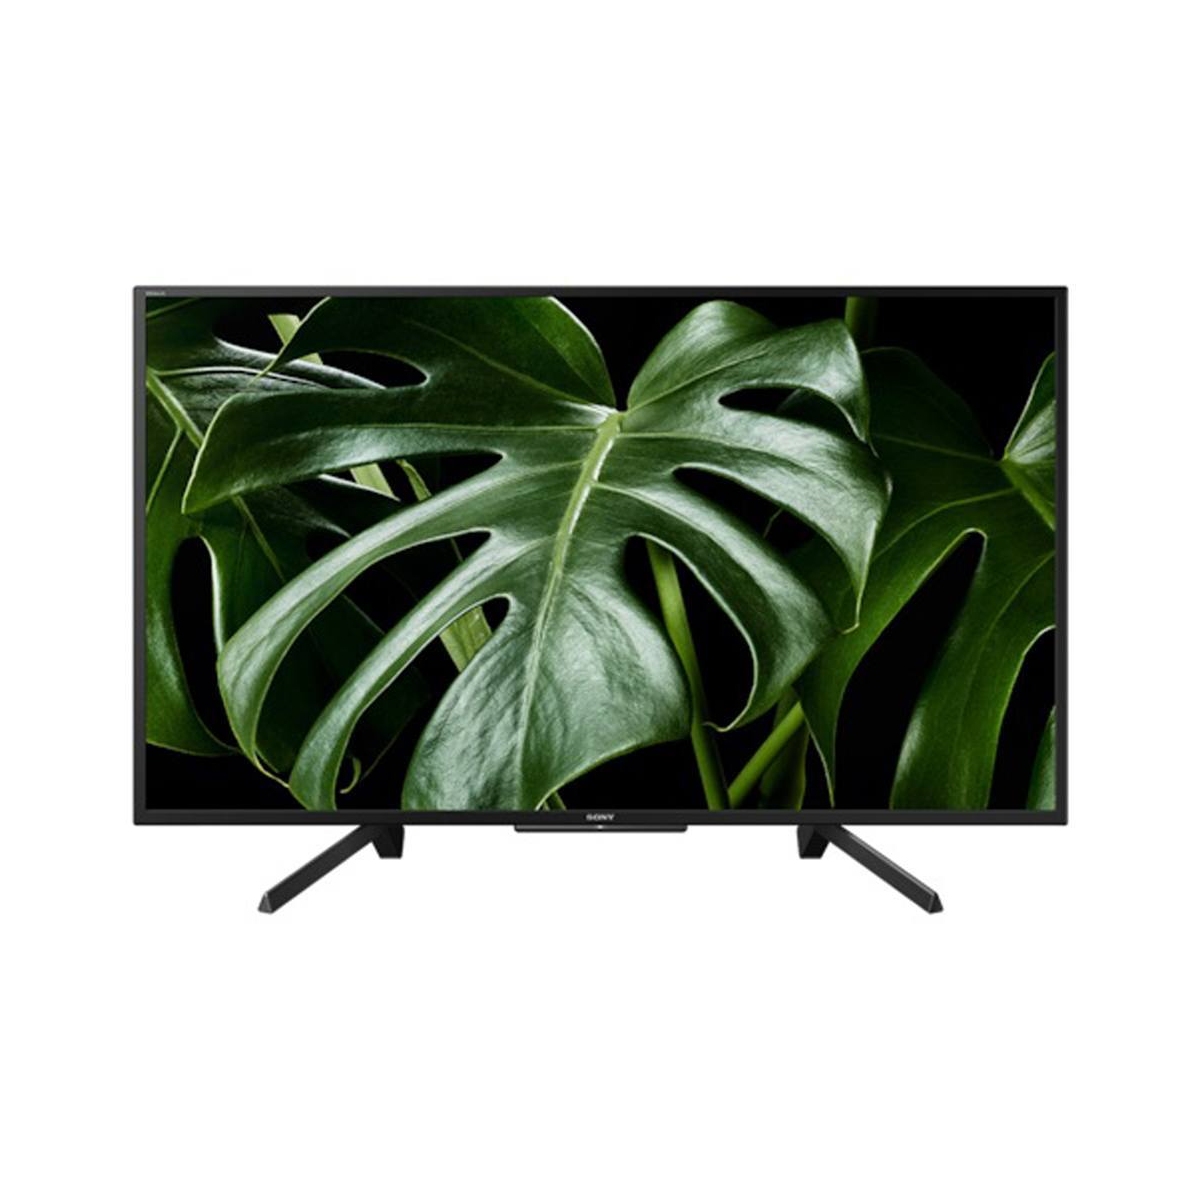 Full HD LED Smart TV 108 cm (43 inch) HD